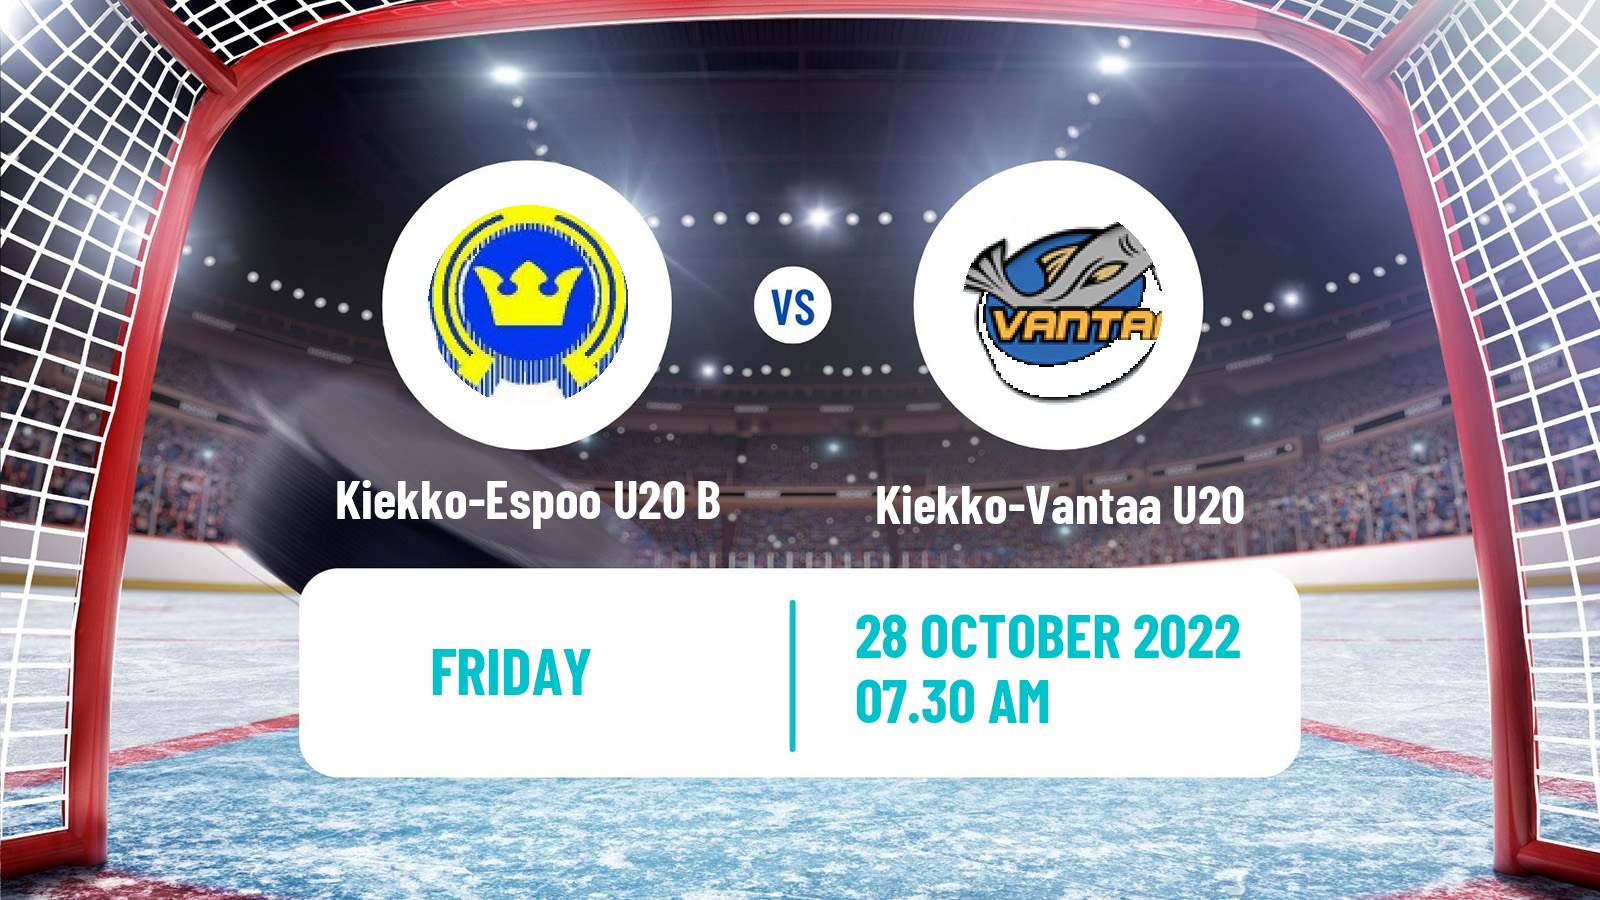 Hockey Finnish SM-sarja U20 Kiekko-Espoo U20 B - Kiekko-Vantaa U20